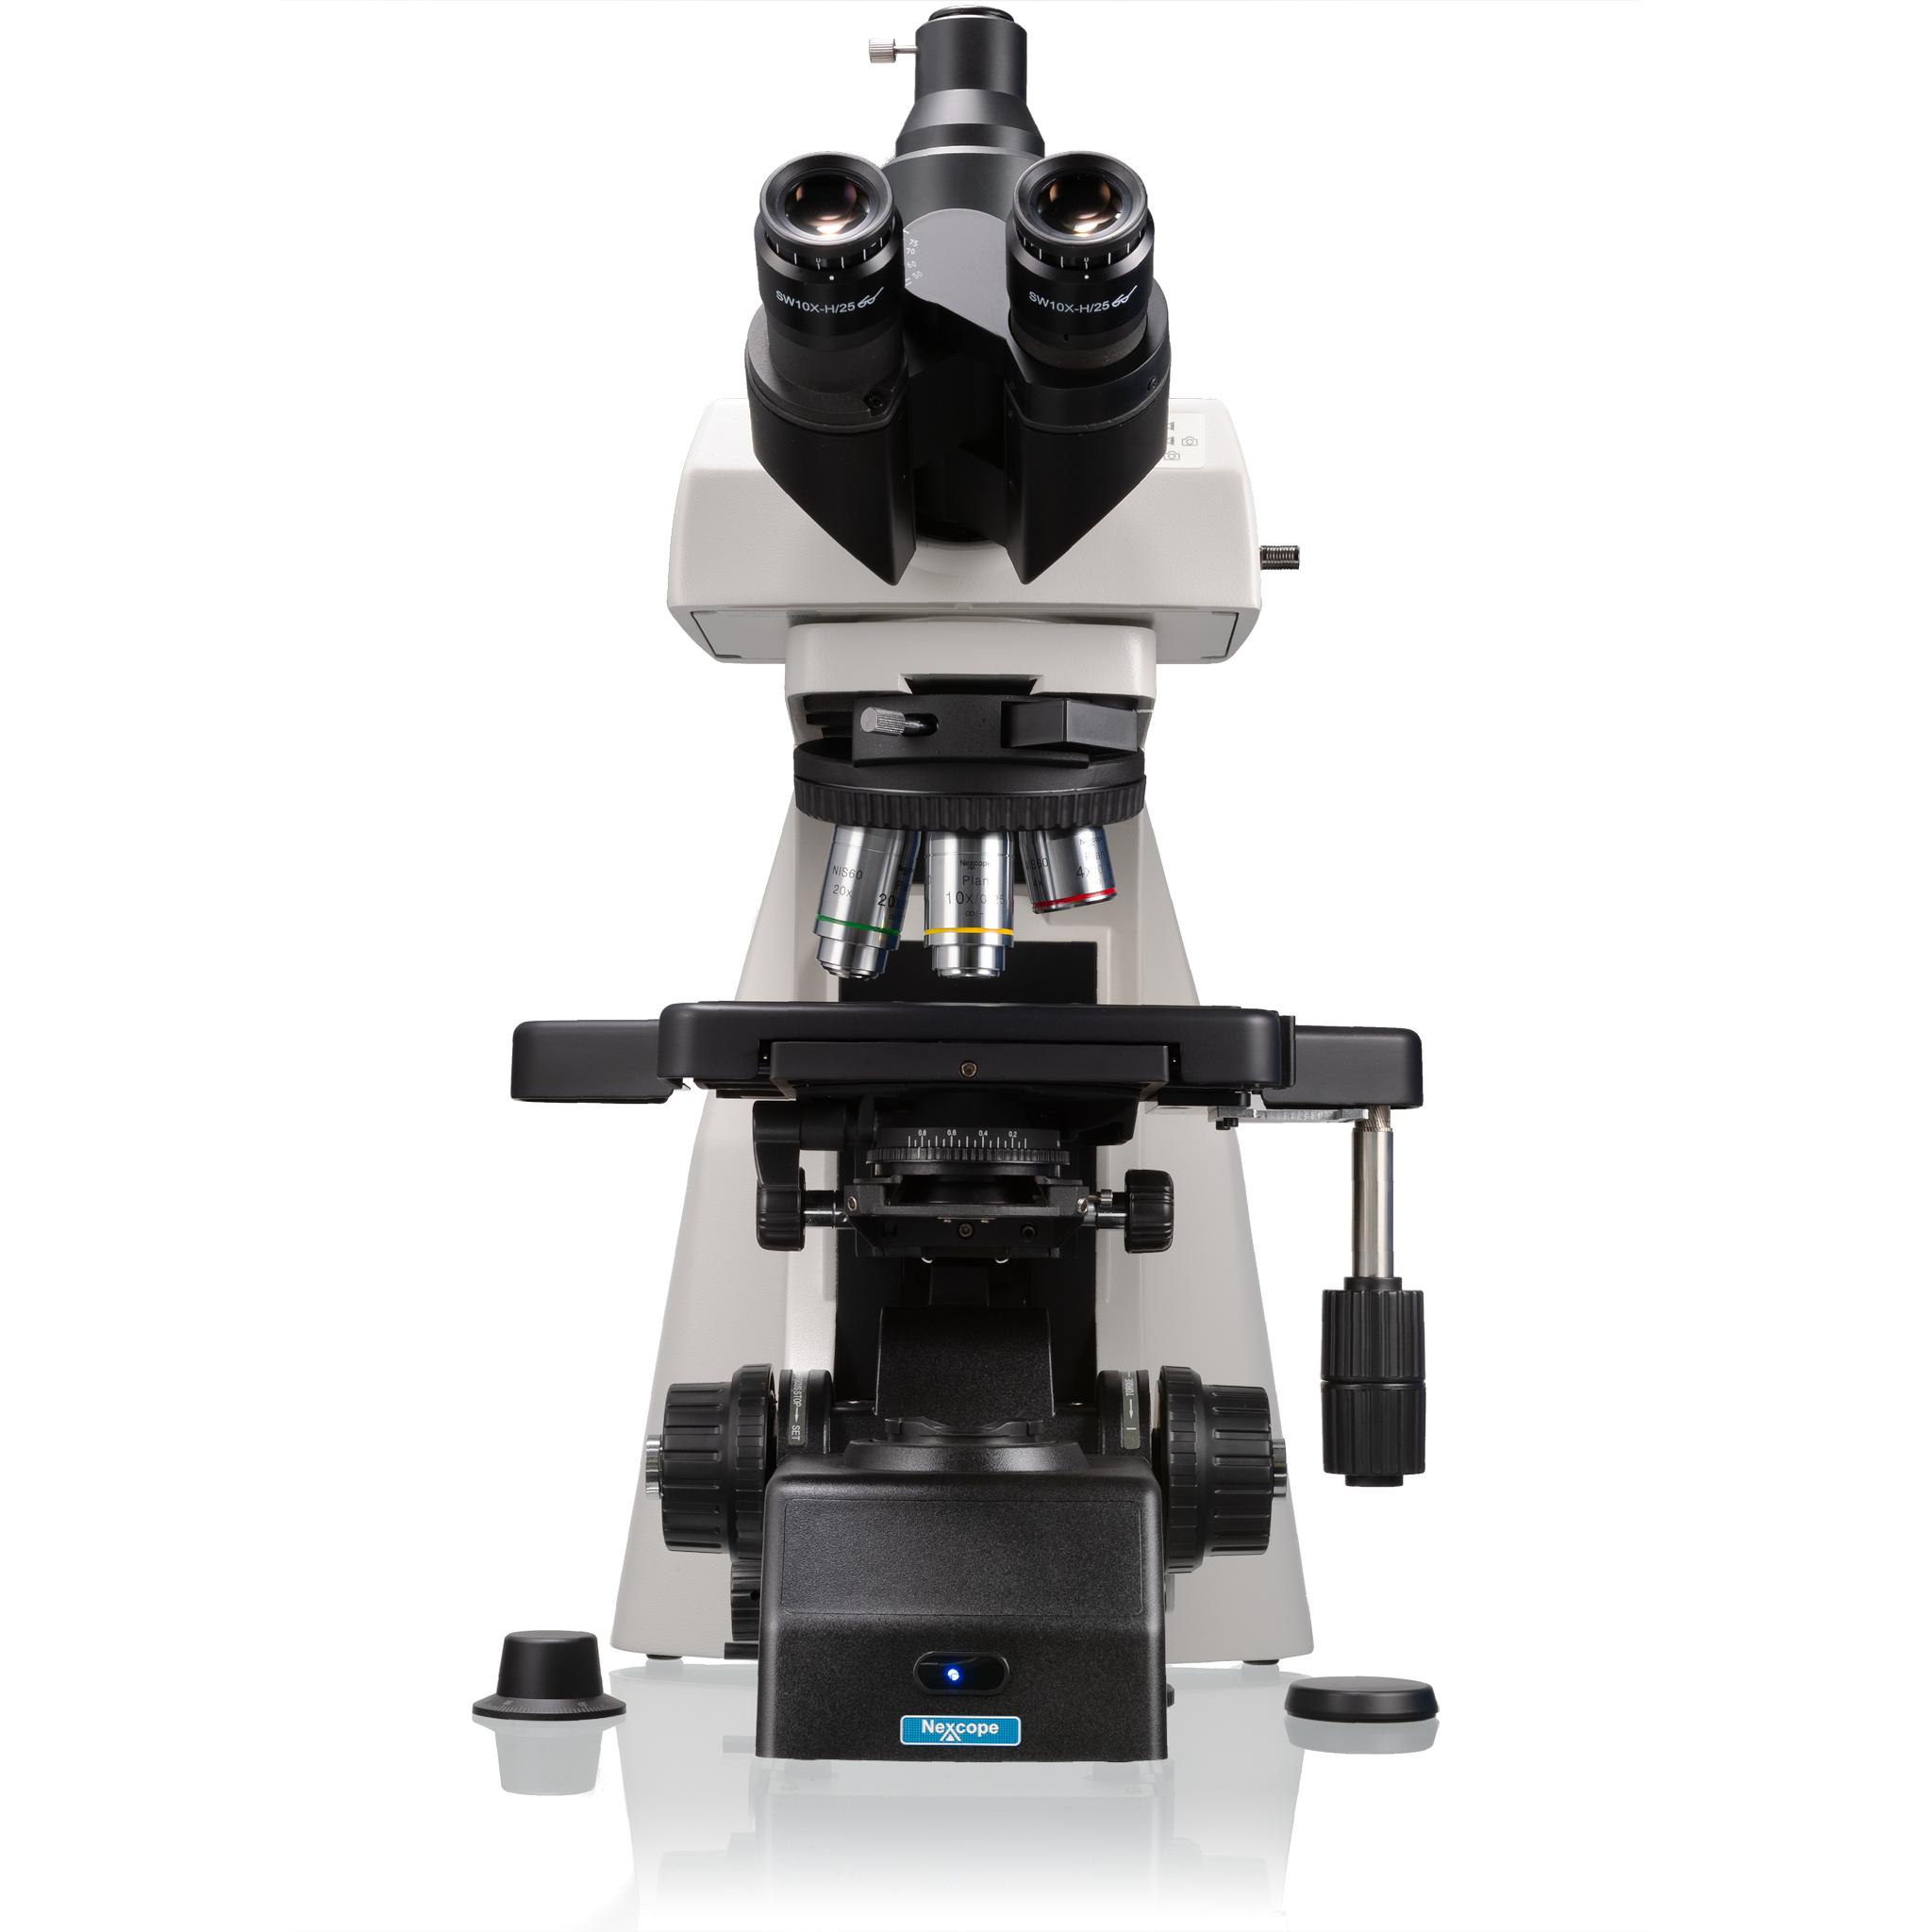 Microscopio profesional de laboratorio Nexcope NE910 con gran capacidad de ampliación